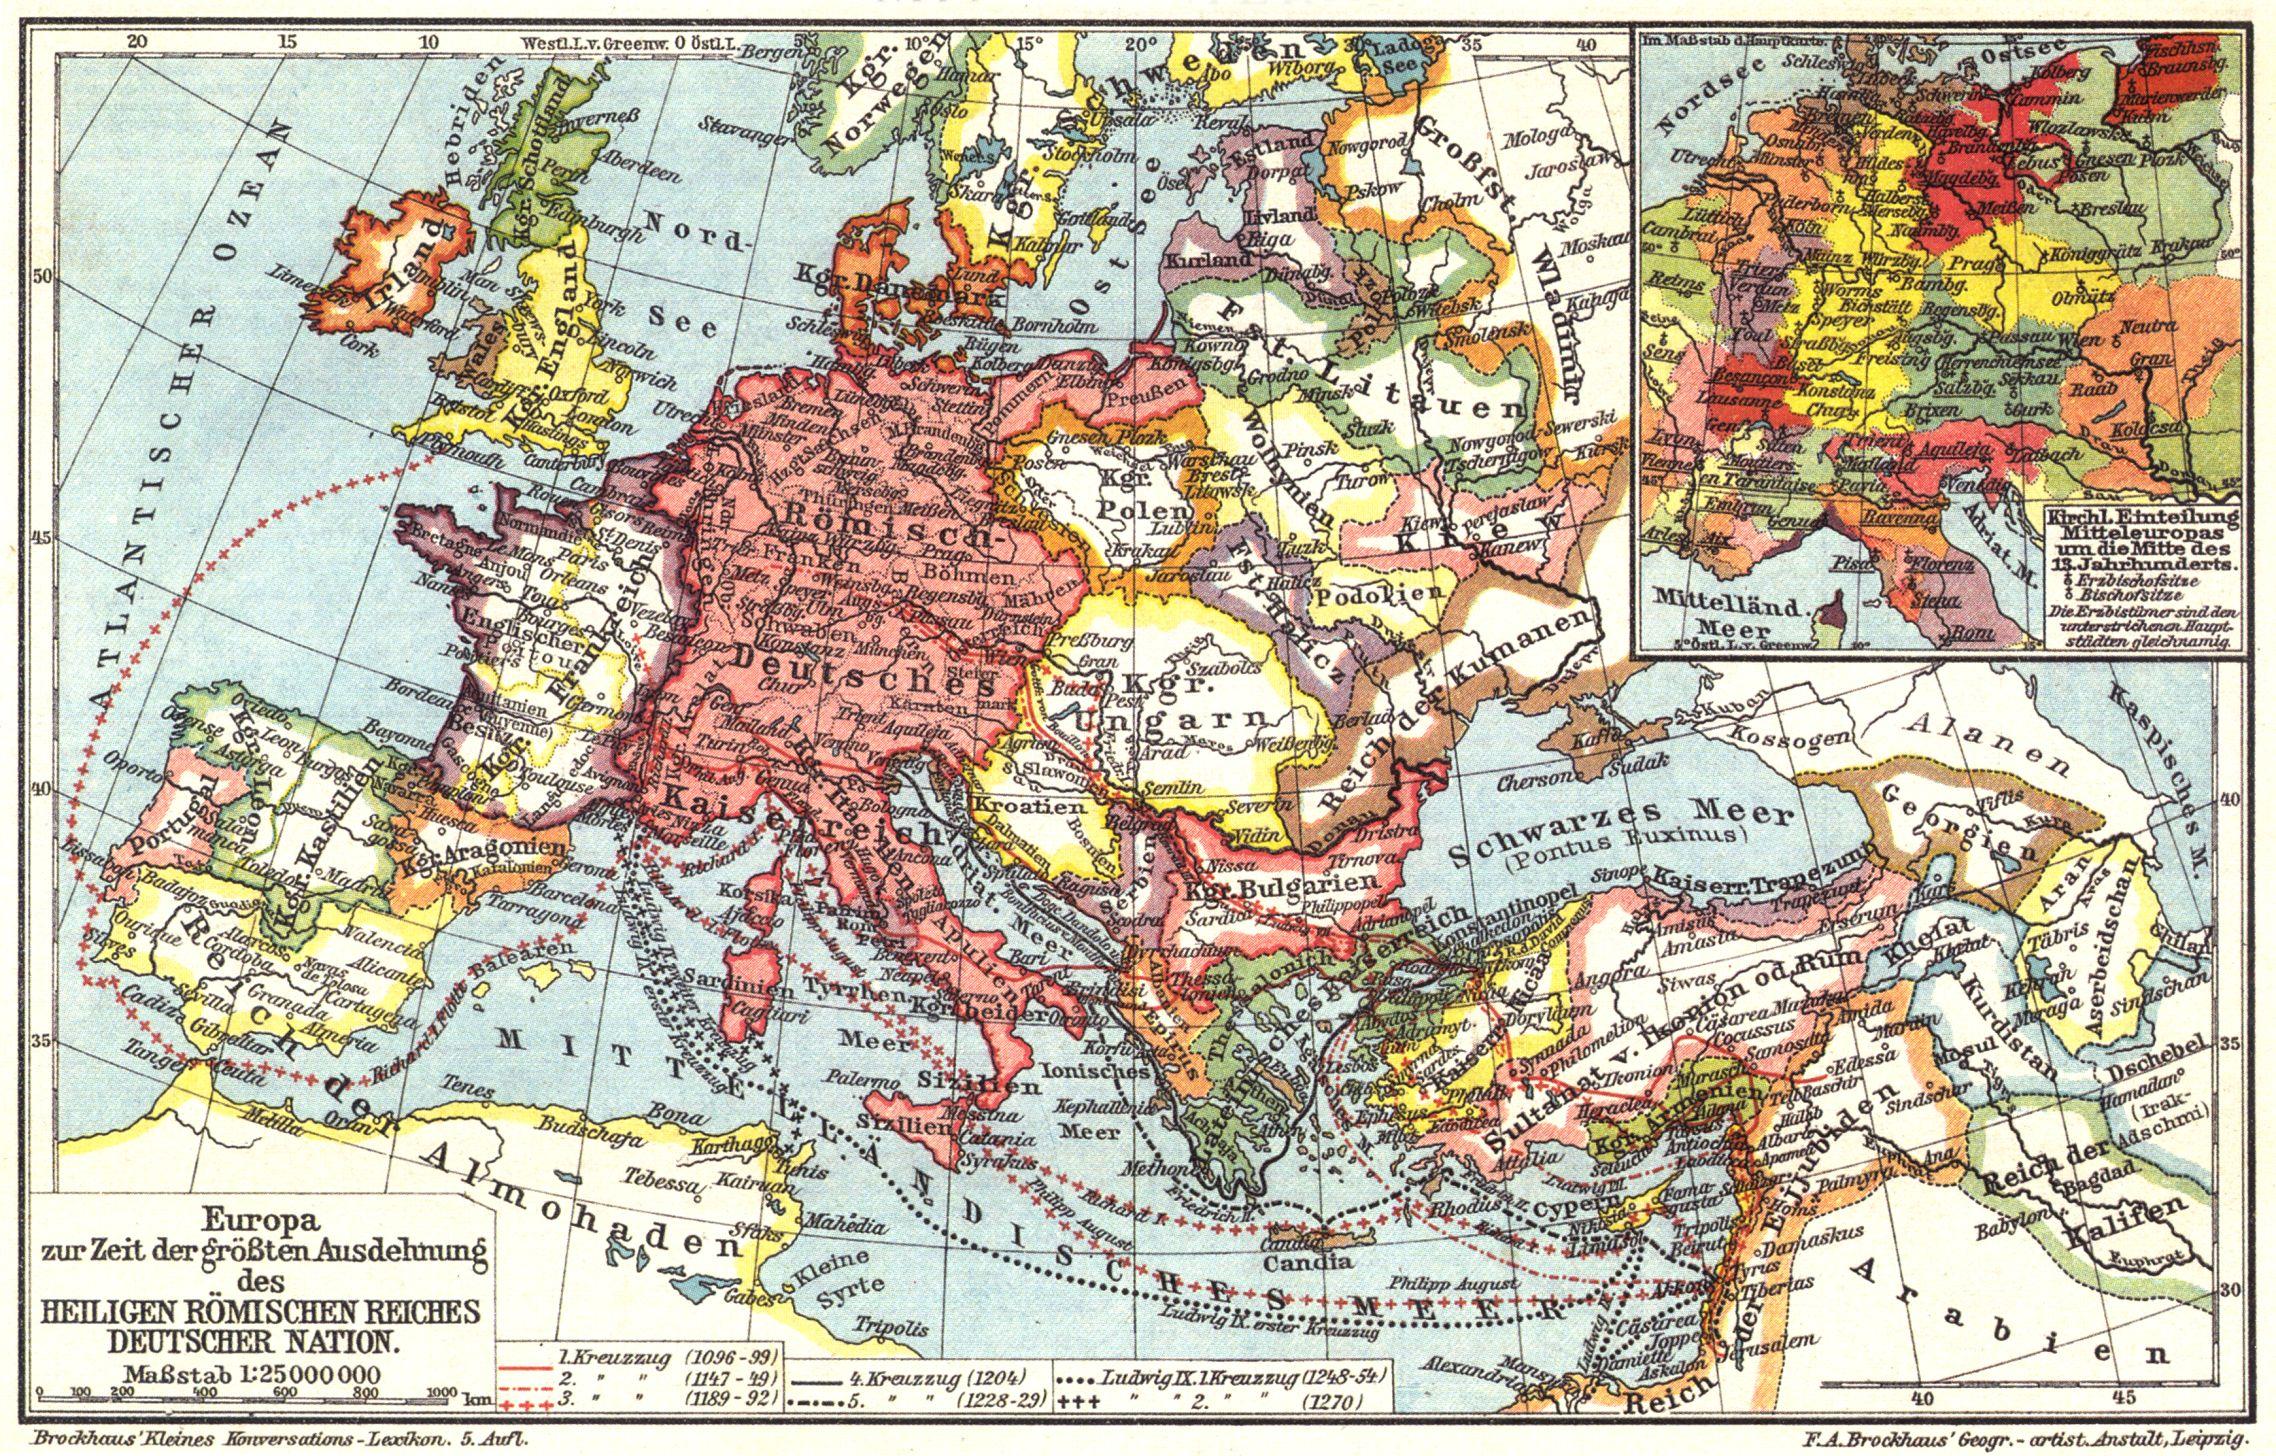 神圣罗马帝国最终没有完全吞并意大利的原因是什么